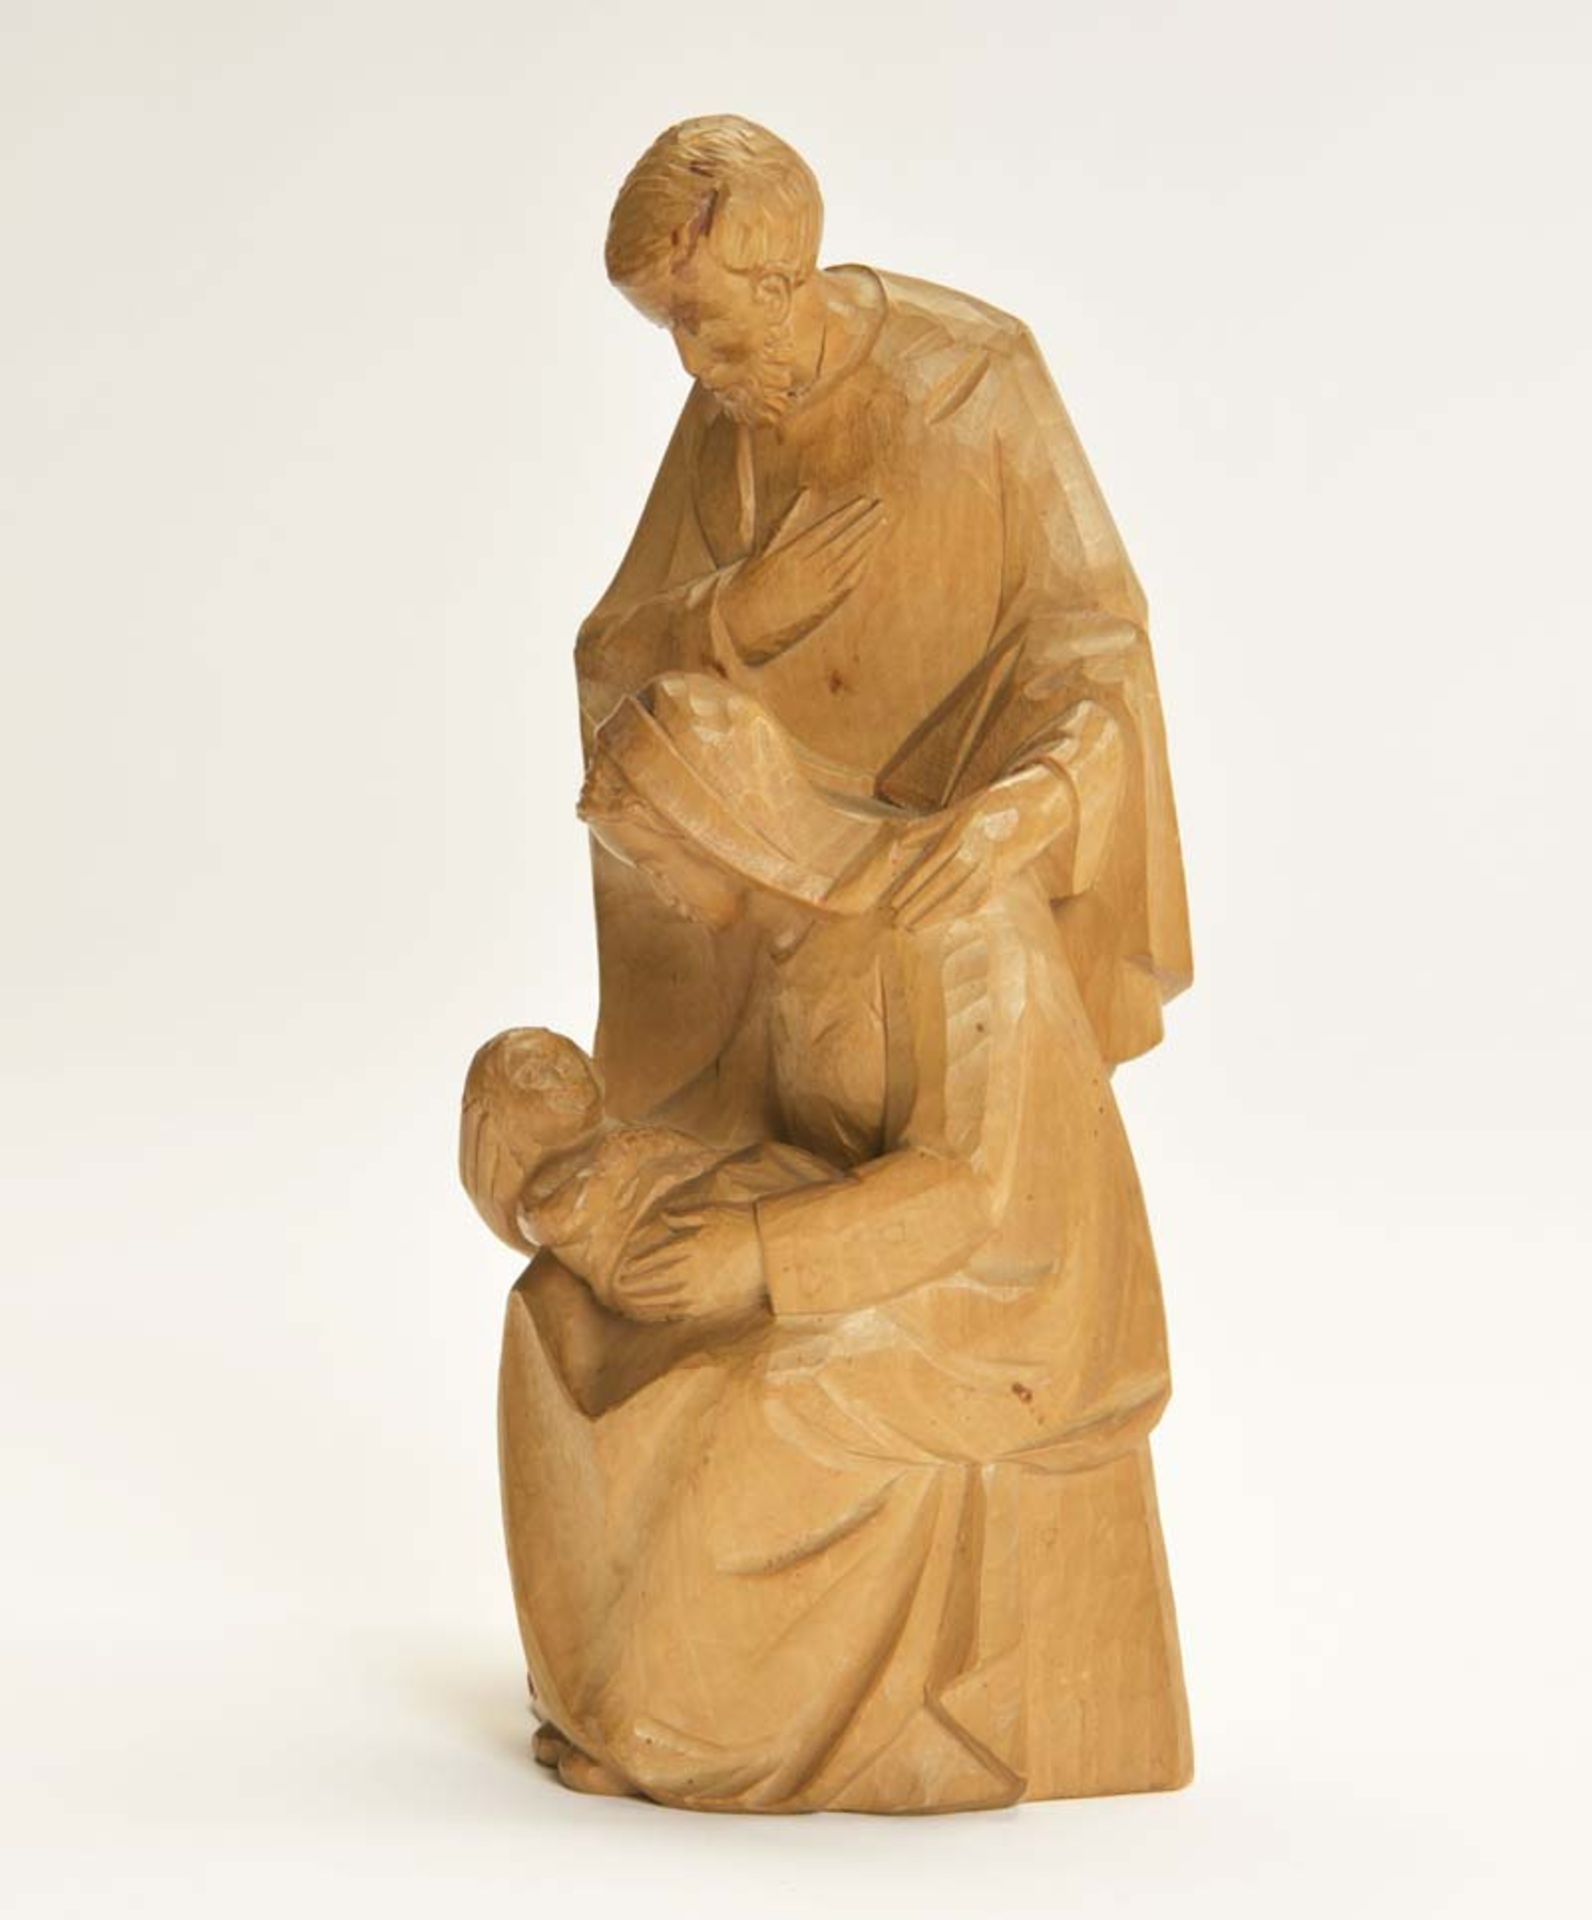 Holzschnitzerei "Heilige Familie", 23 cm, 1 Kopf geklebt, sonst sehr guter Zustand